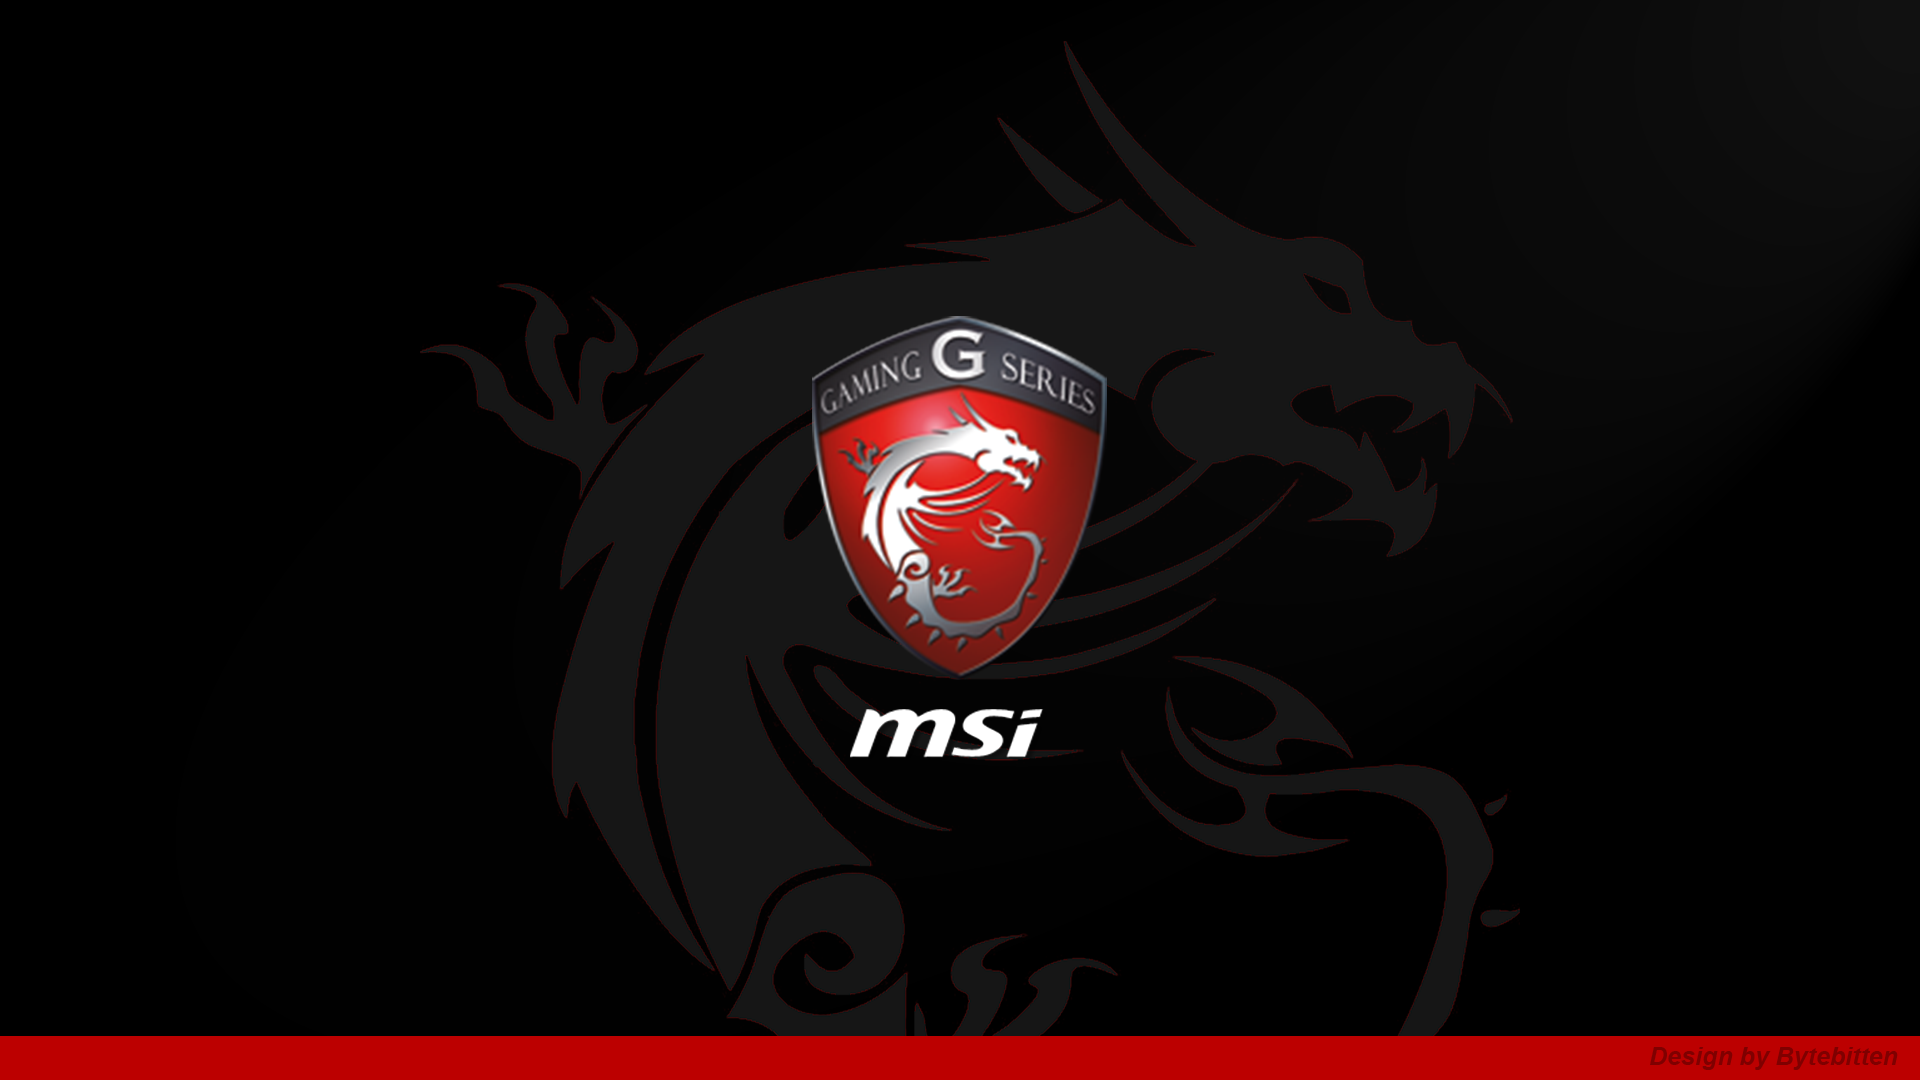 Download MSi Gaming G Series Dragon Logo Background Wallpaper